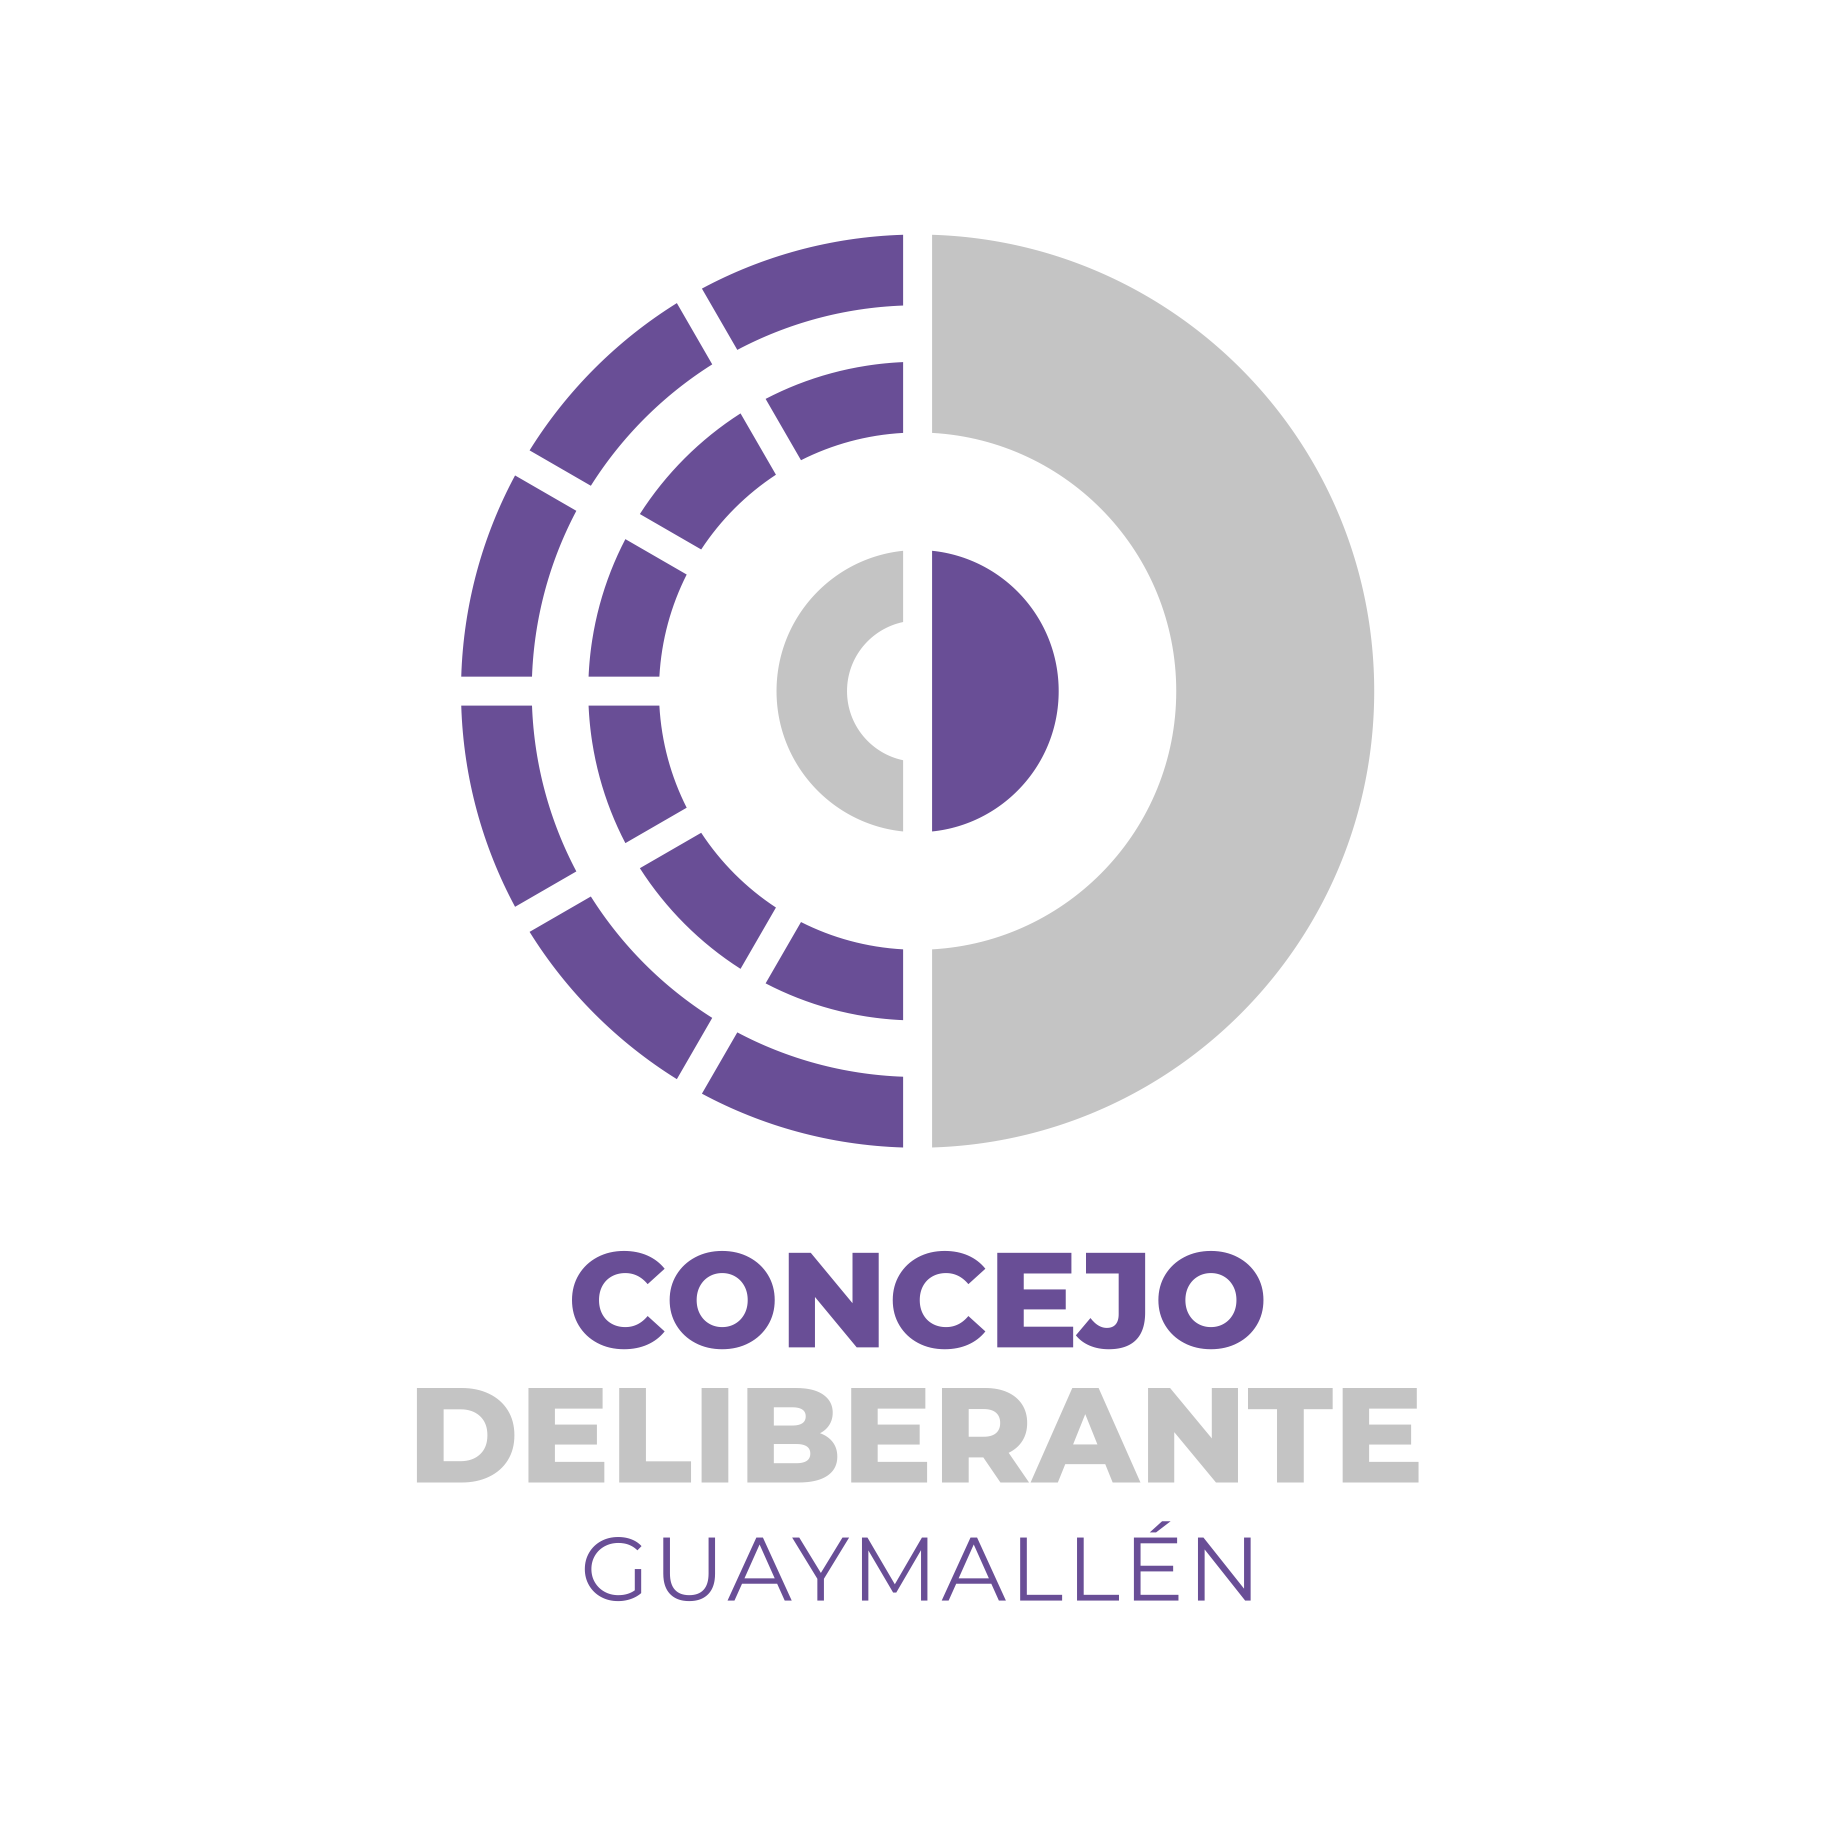 Honorable Concejo Deliberante de Guaymallén